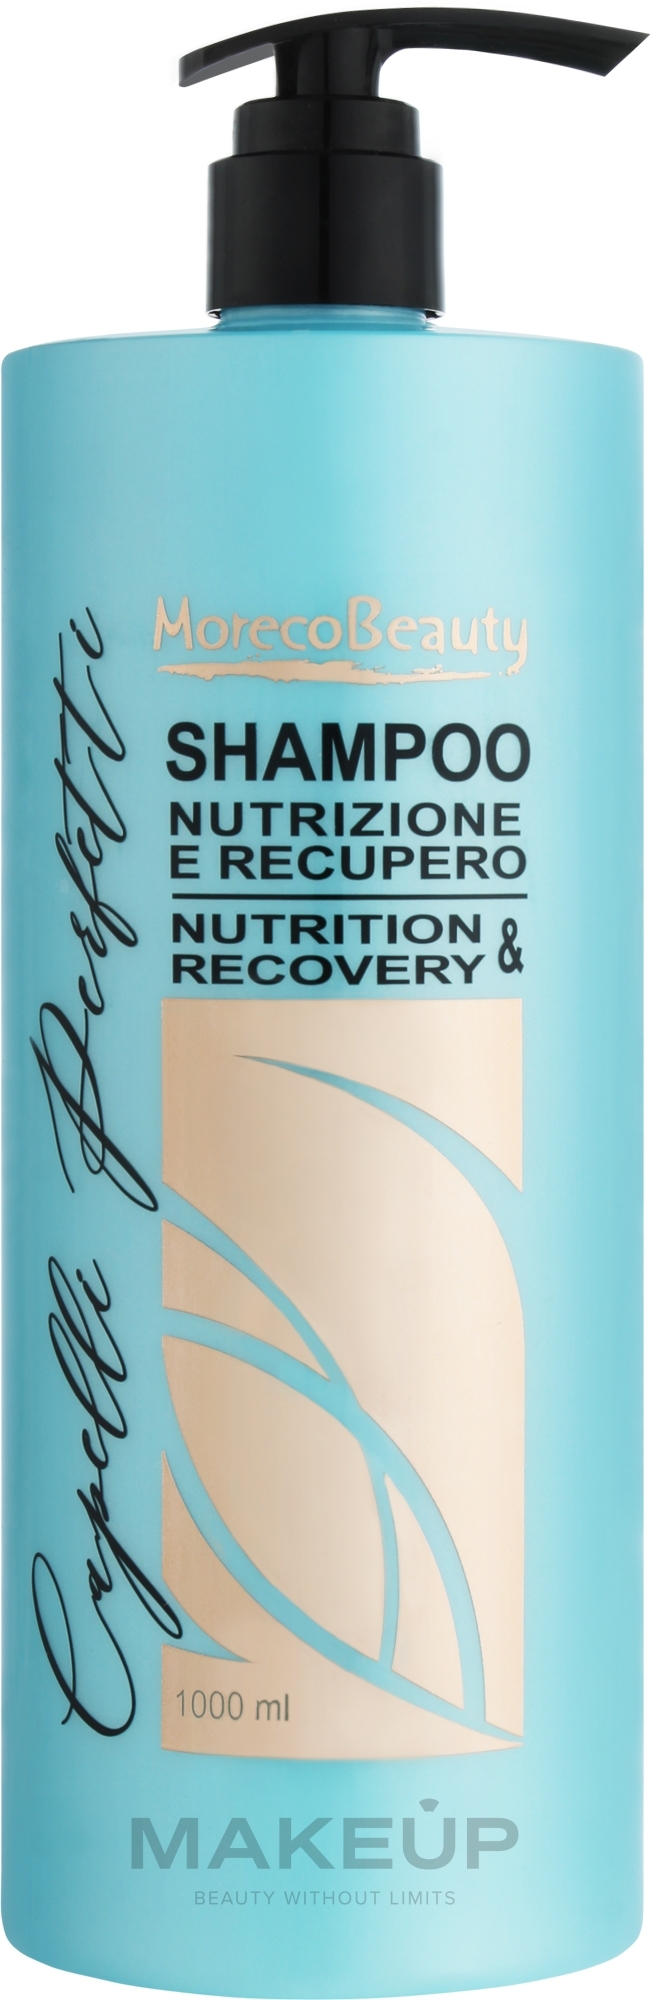 Шампунь для волос "Питание и восстановление" - Moreco Beauty Nutrition & Recovery — фото 1000ml